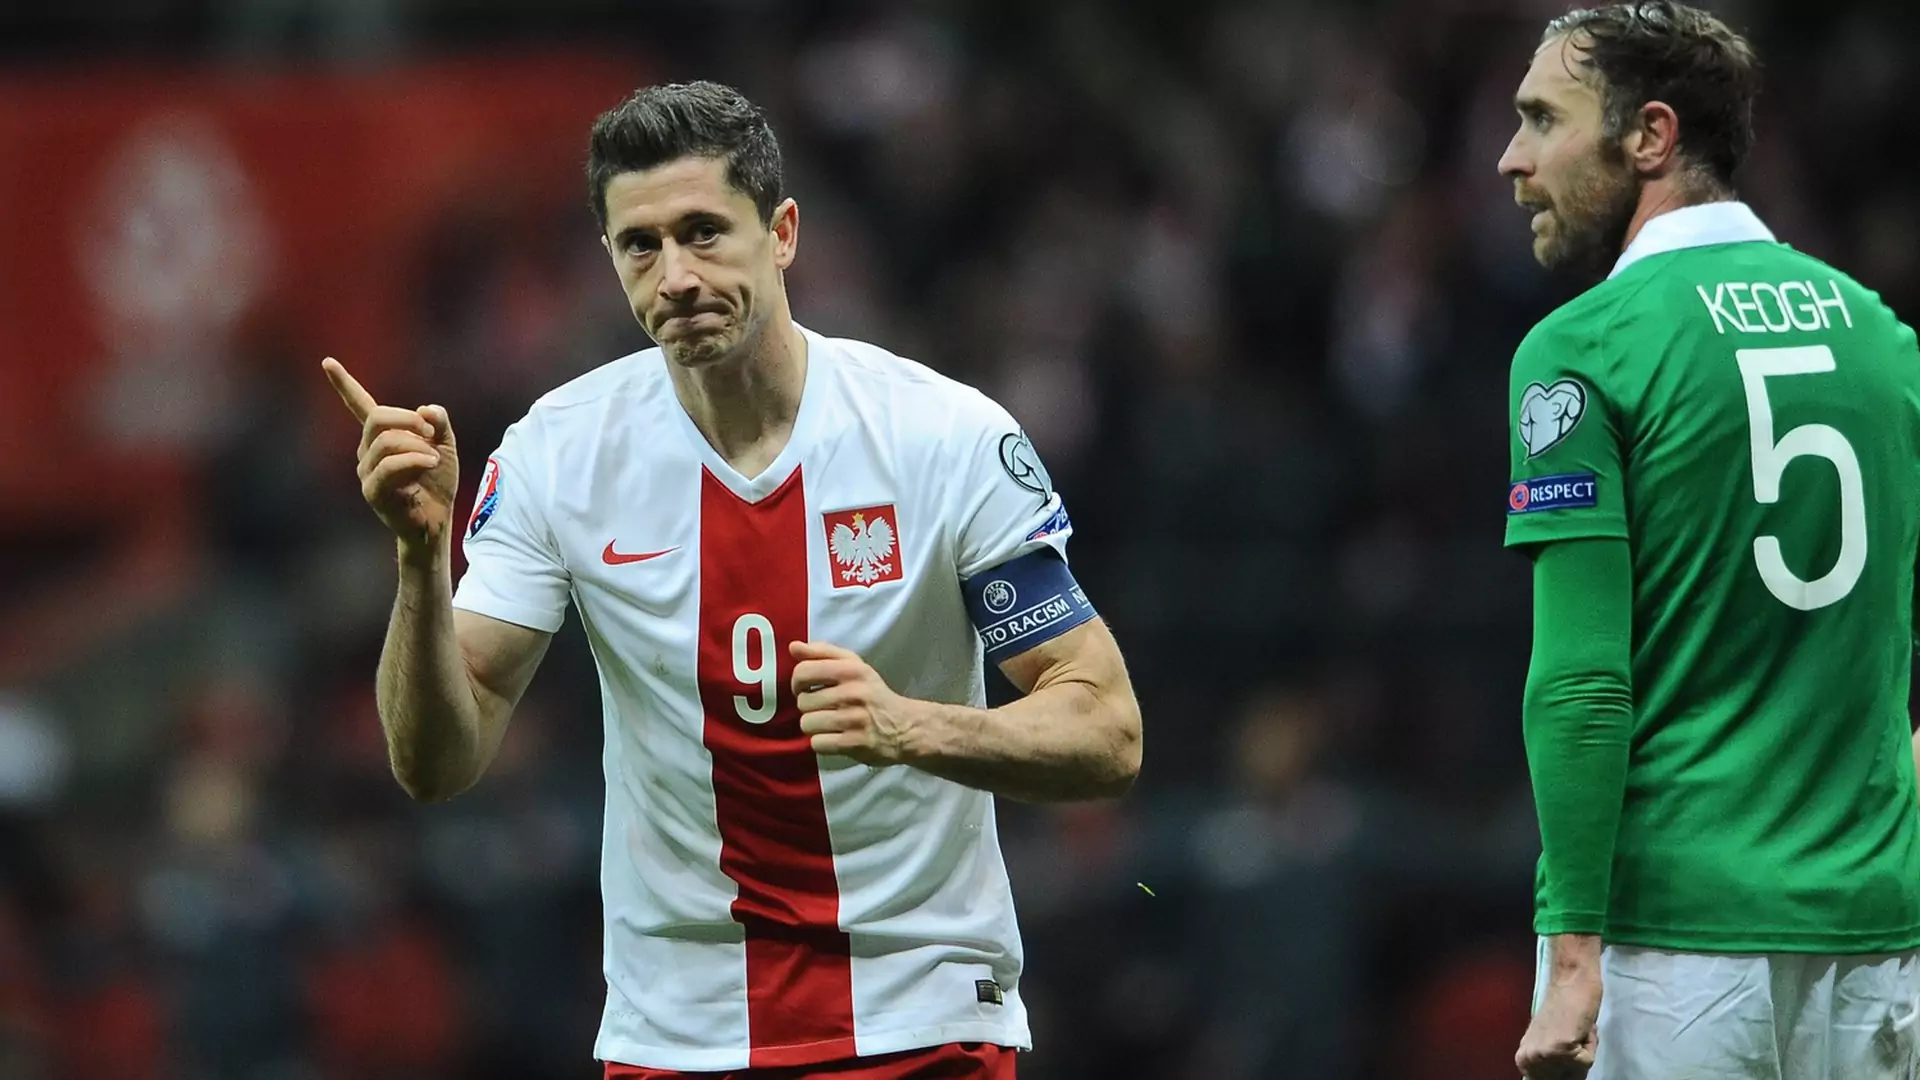 Polsat zakoduje połowę meczów Euro 2016. Które spotkania obejrzymy za darmo?